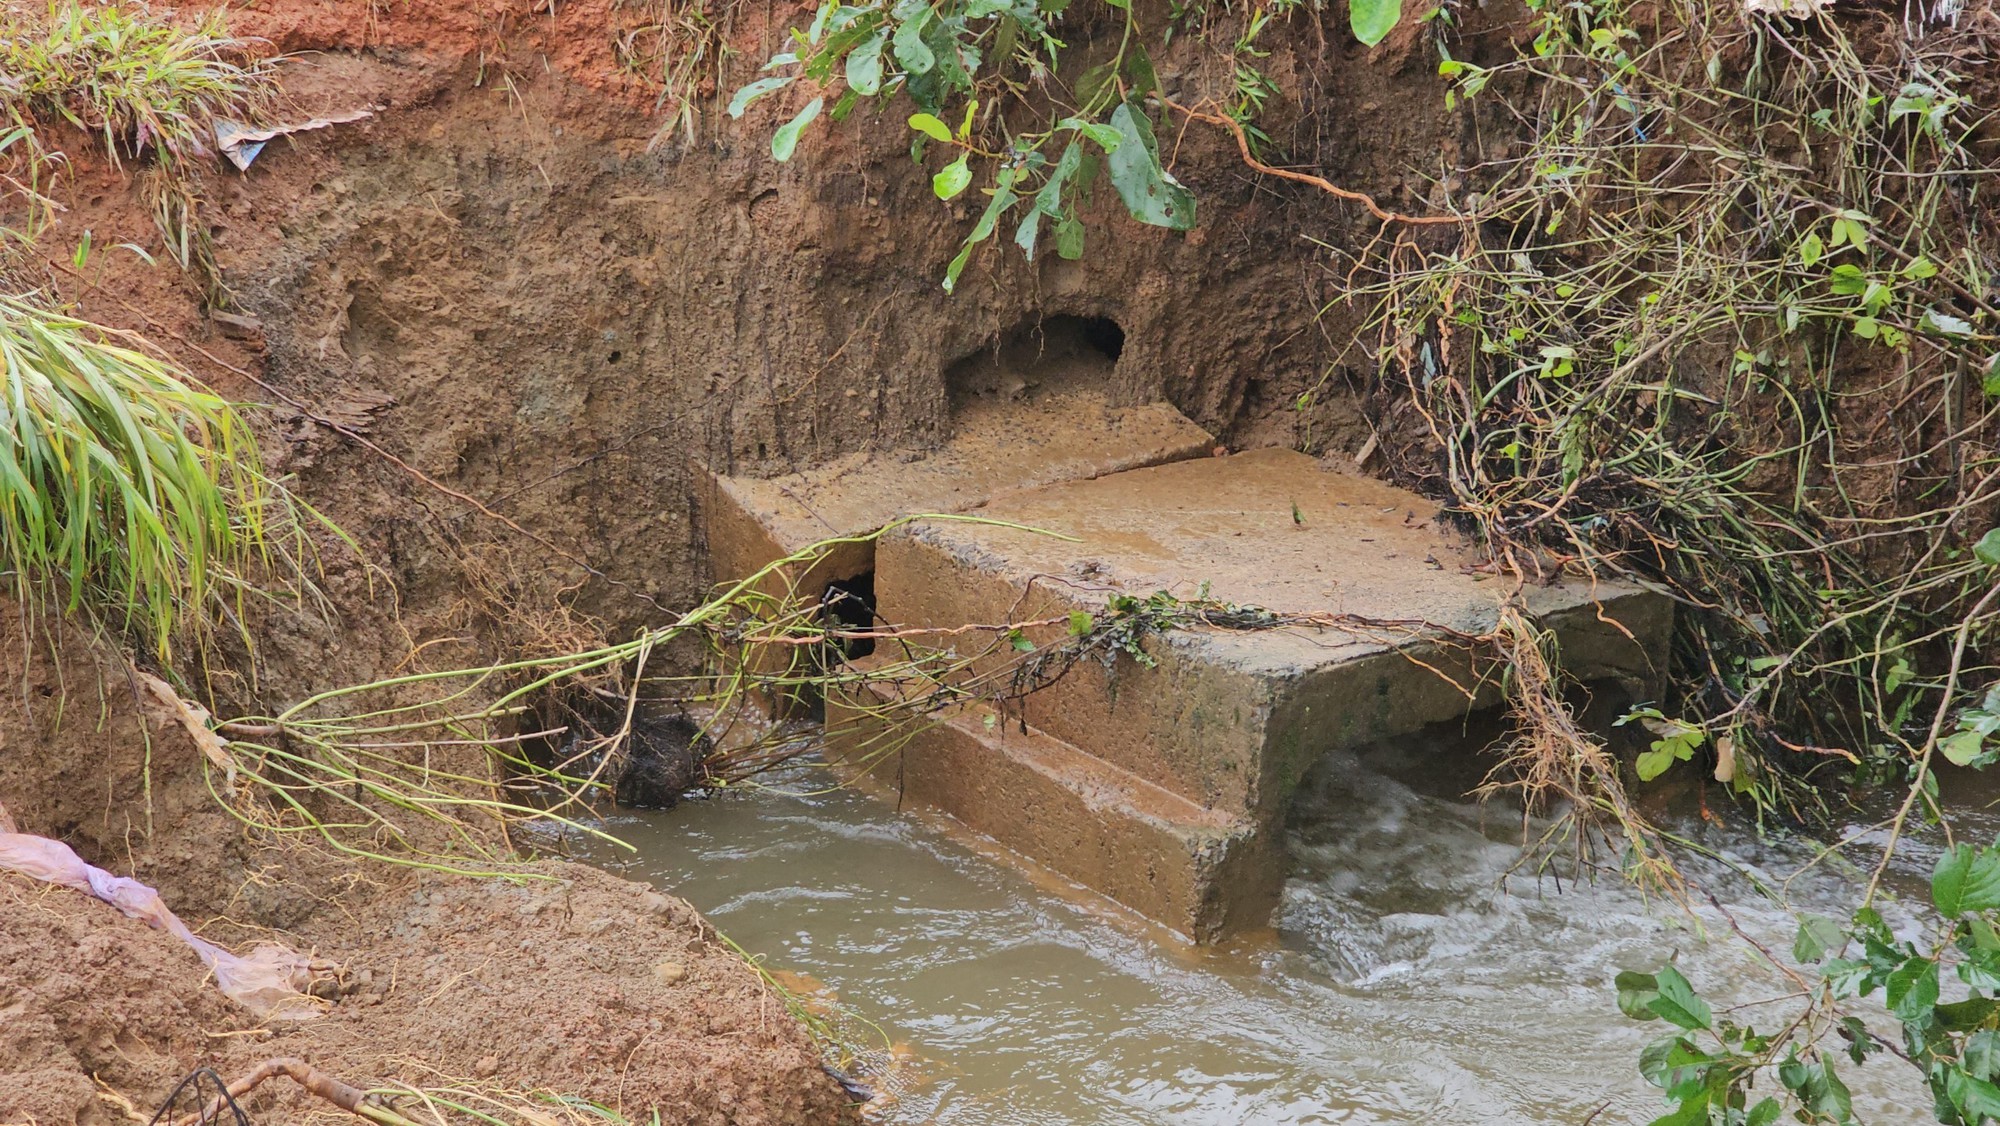 Vỡ hồ chứa nước ở Đắk Nông gây thiệt hại hơn nửa tỷ đồng - Ảnh 1.